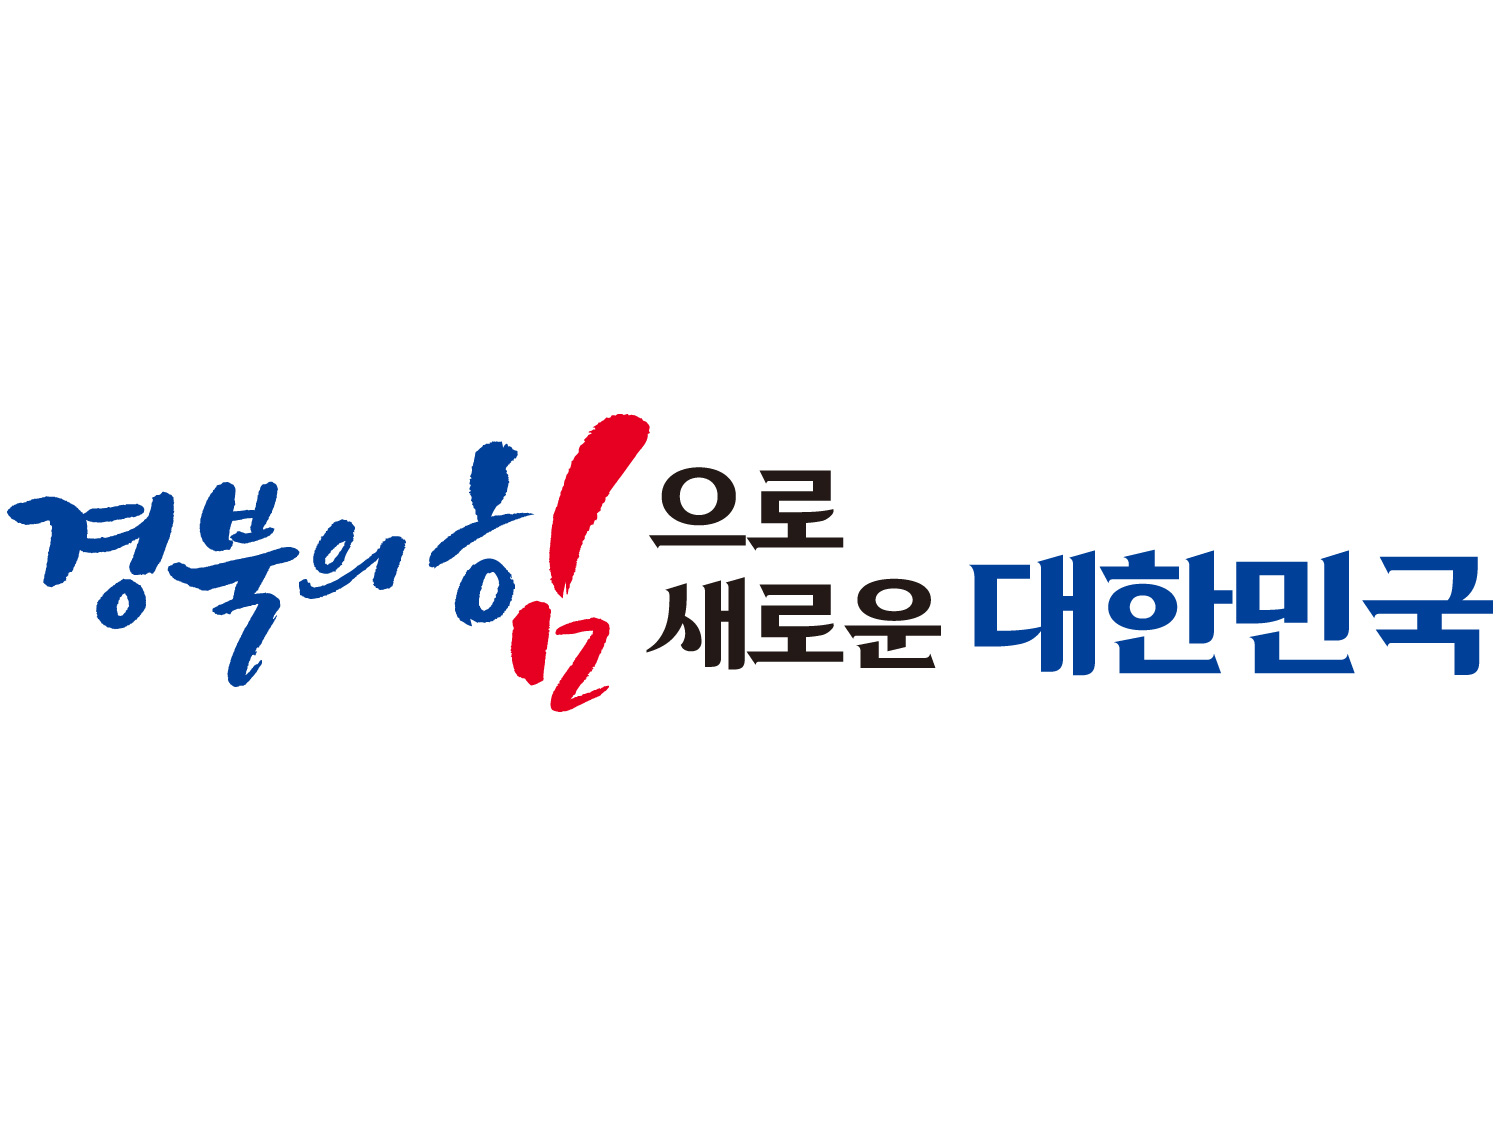 경북의 힘으로! 새로운 대한민국